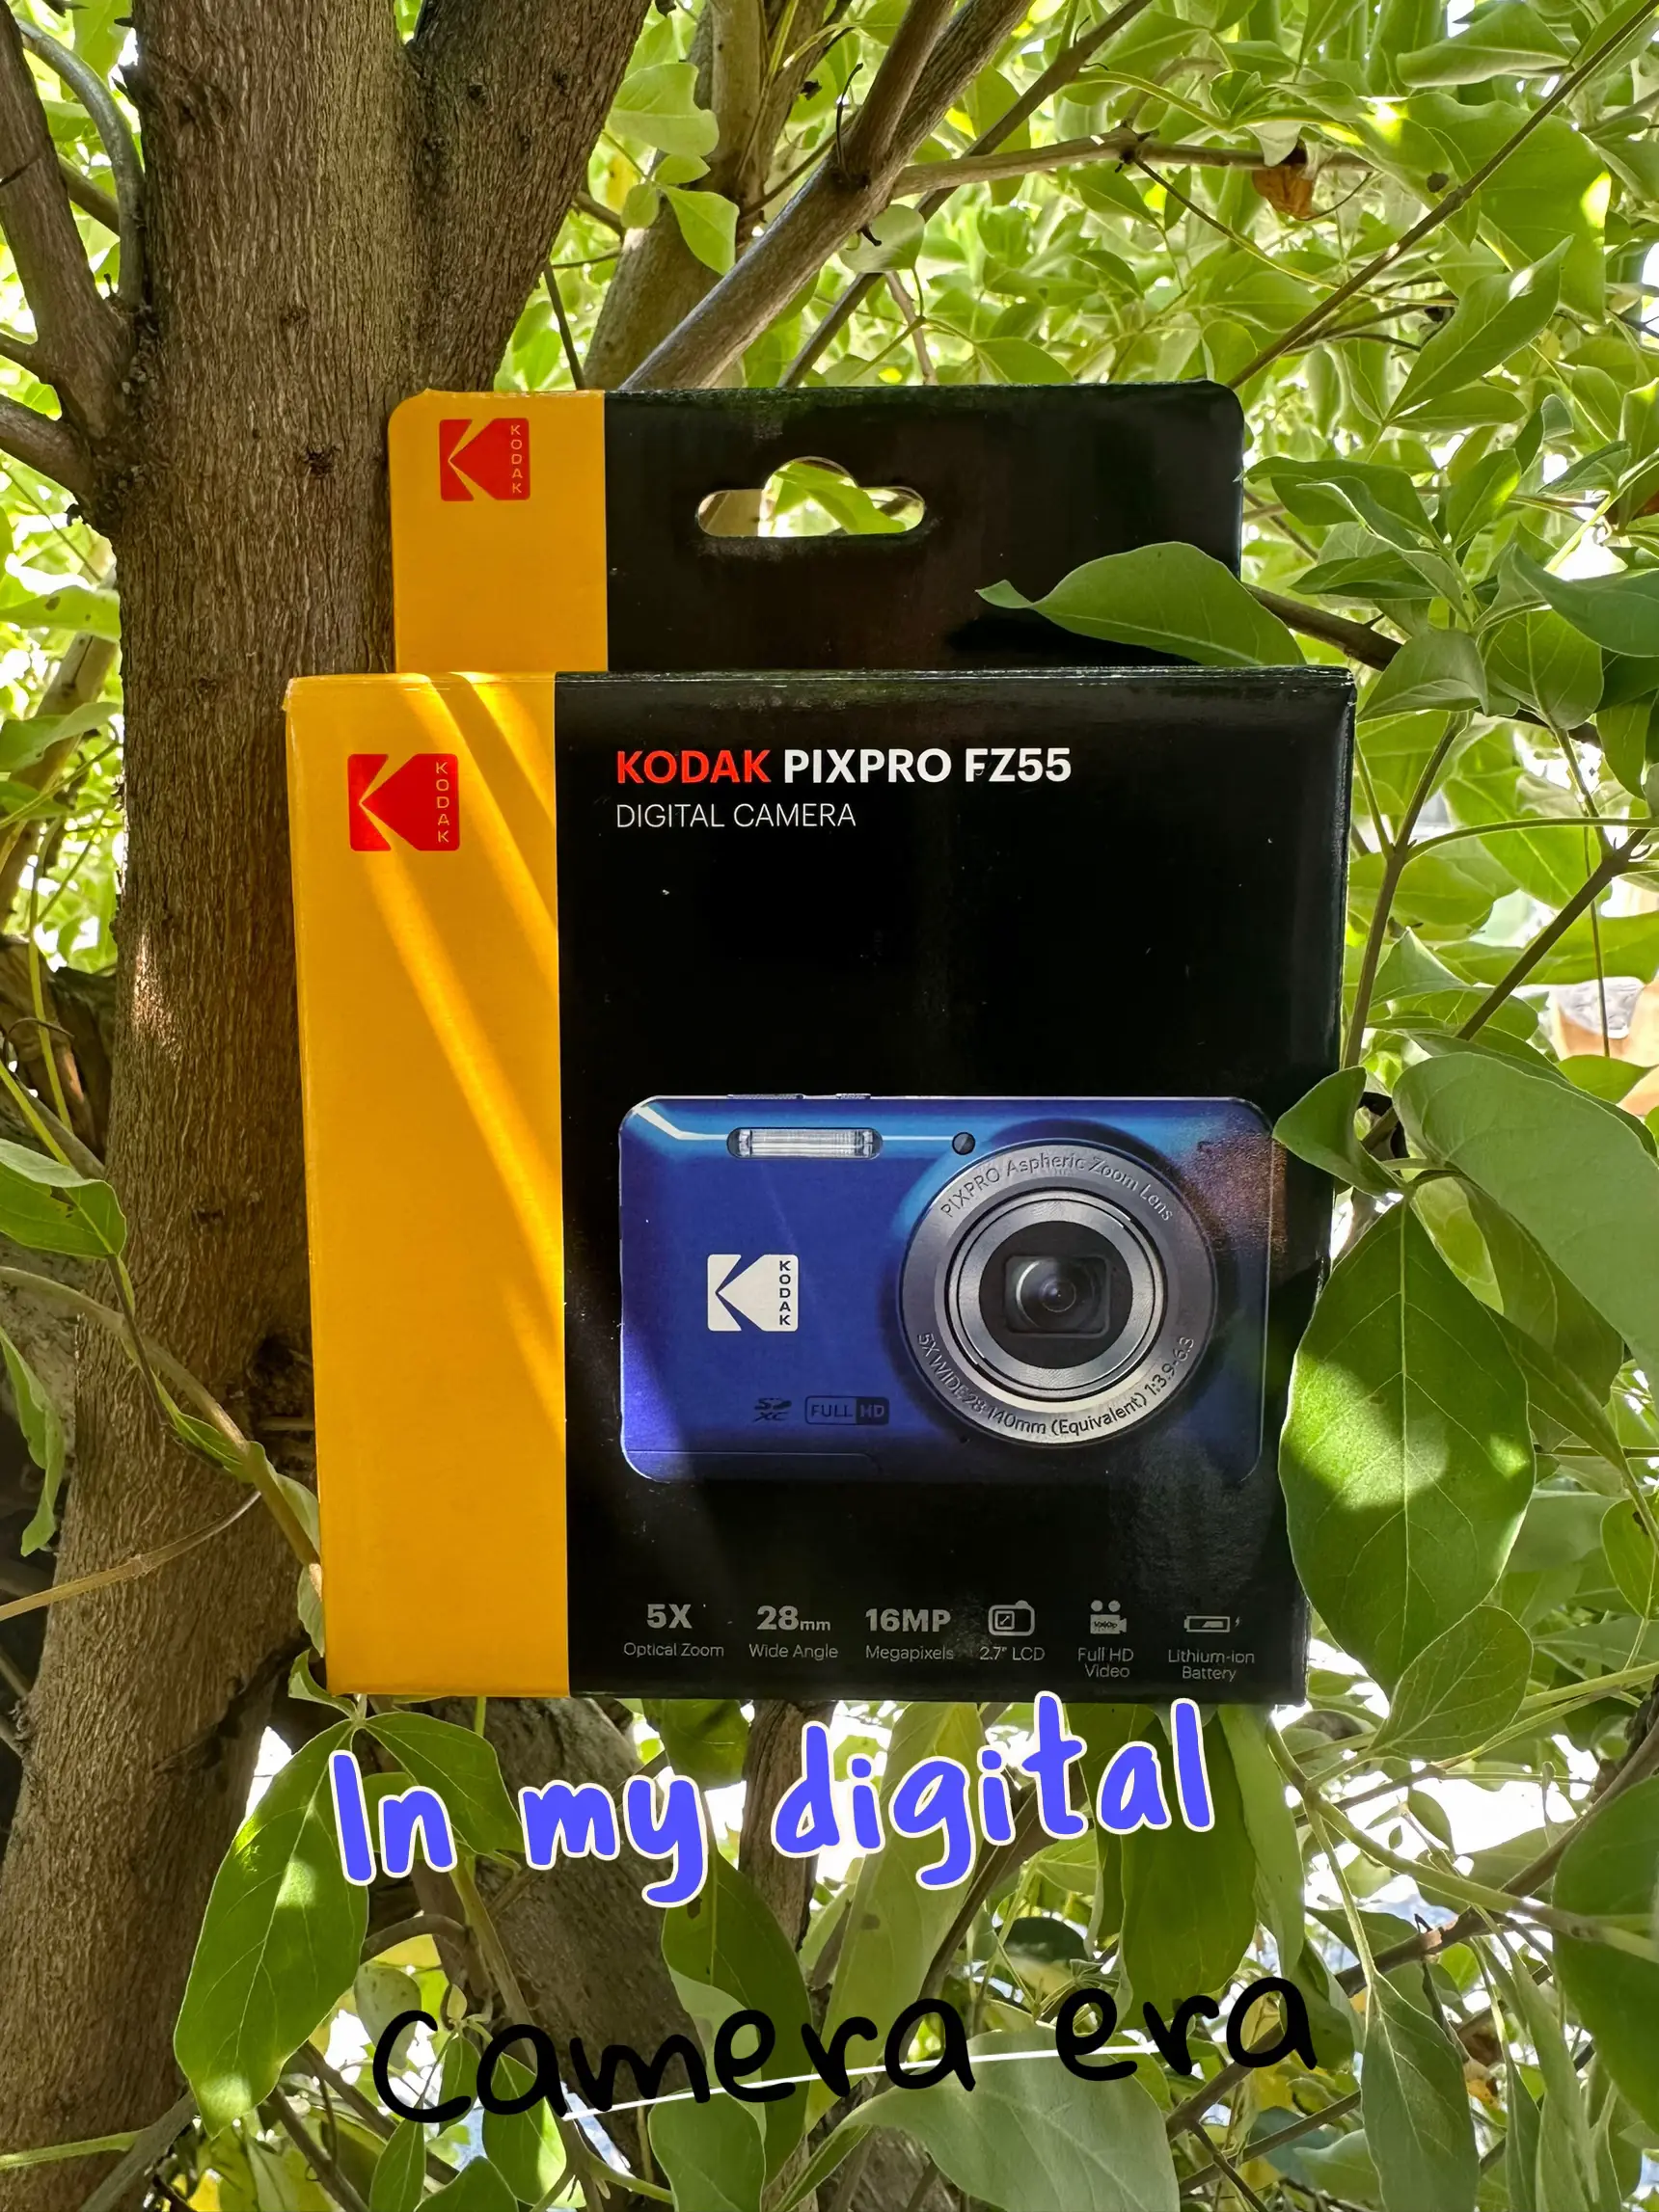 Kodak Pixpro Fz45 Review - Lemon8 Search